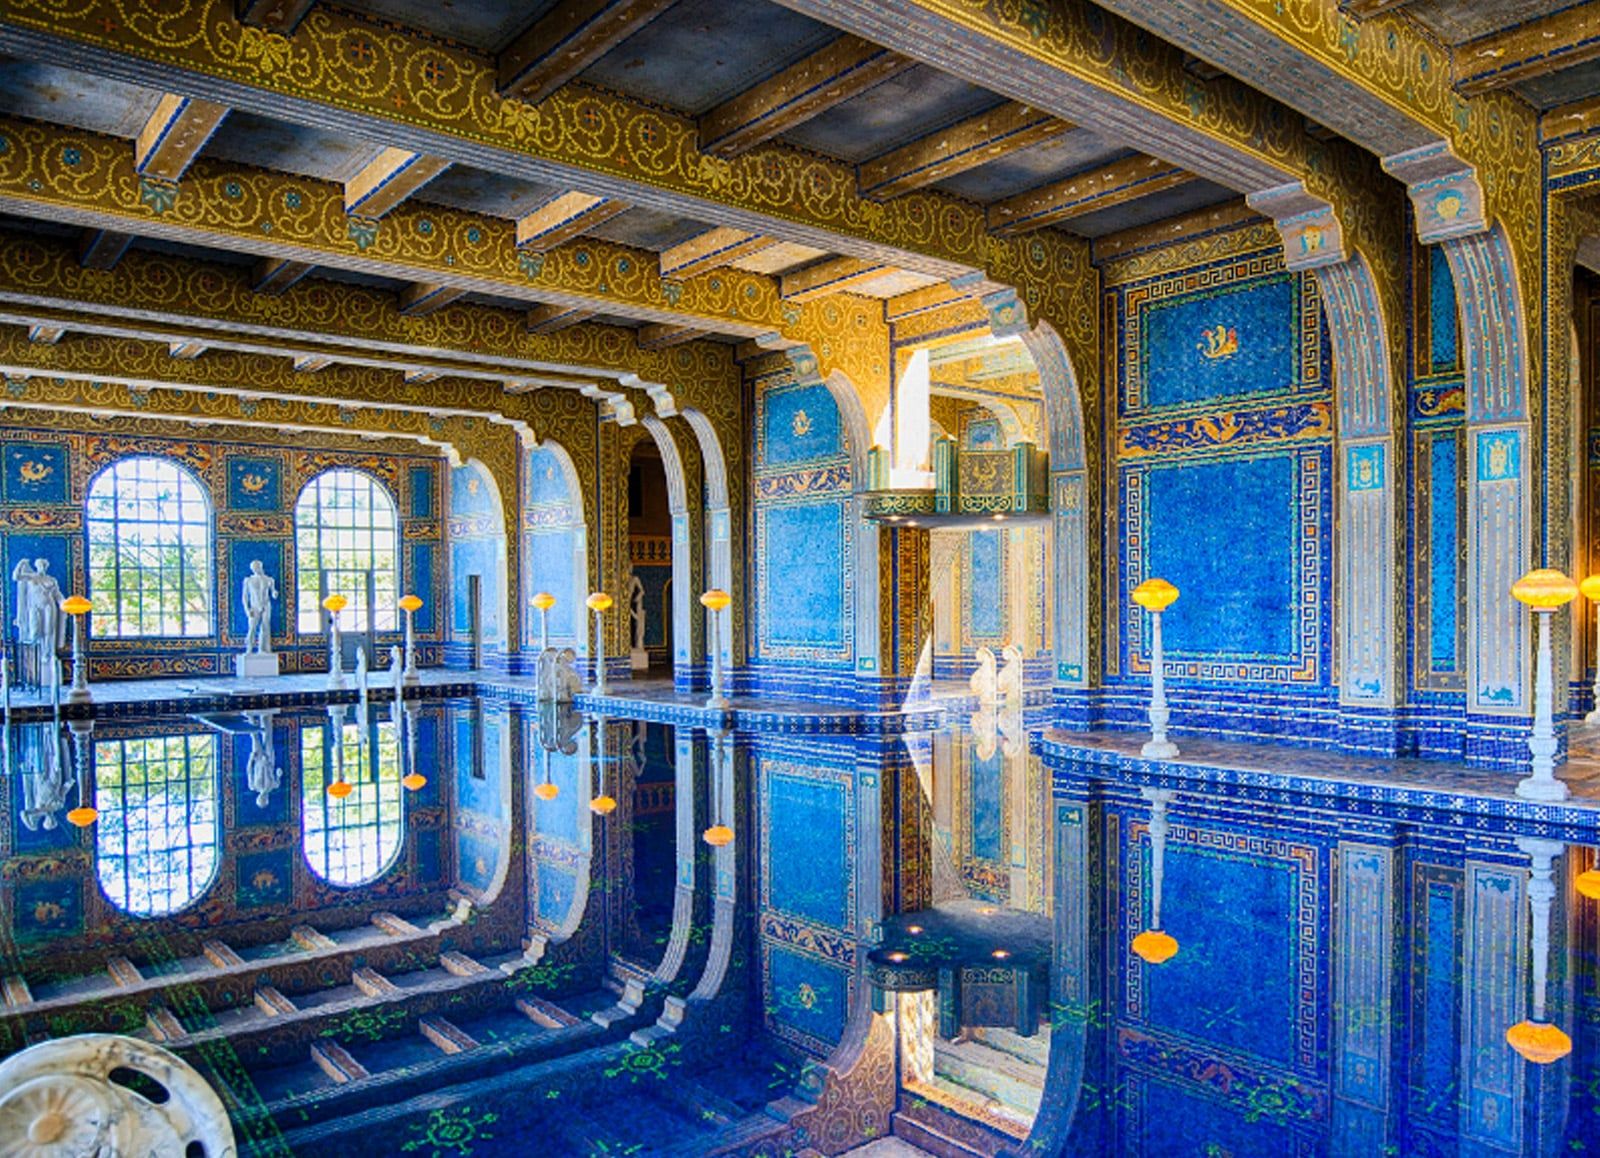 La piscina más cara del mundo - The Neptune pool